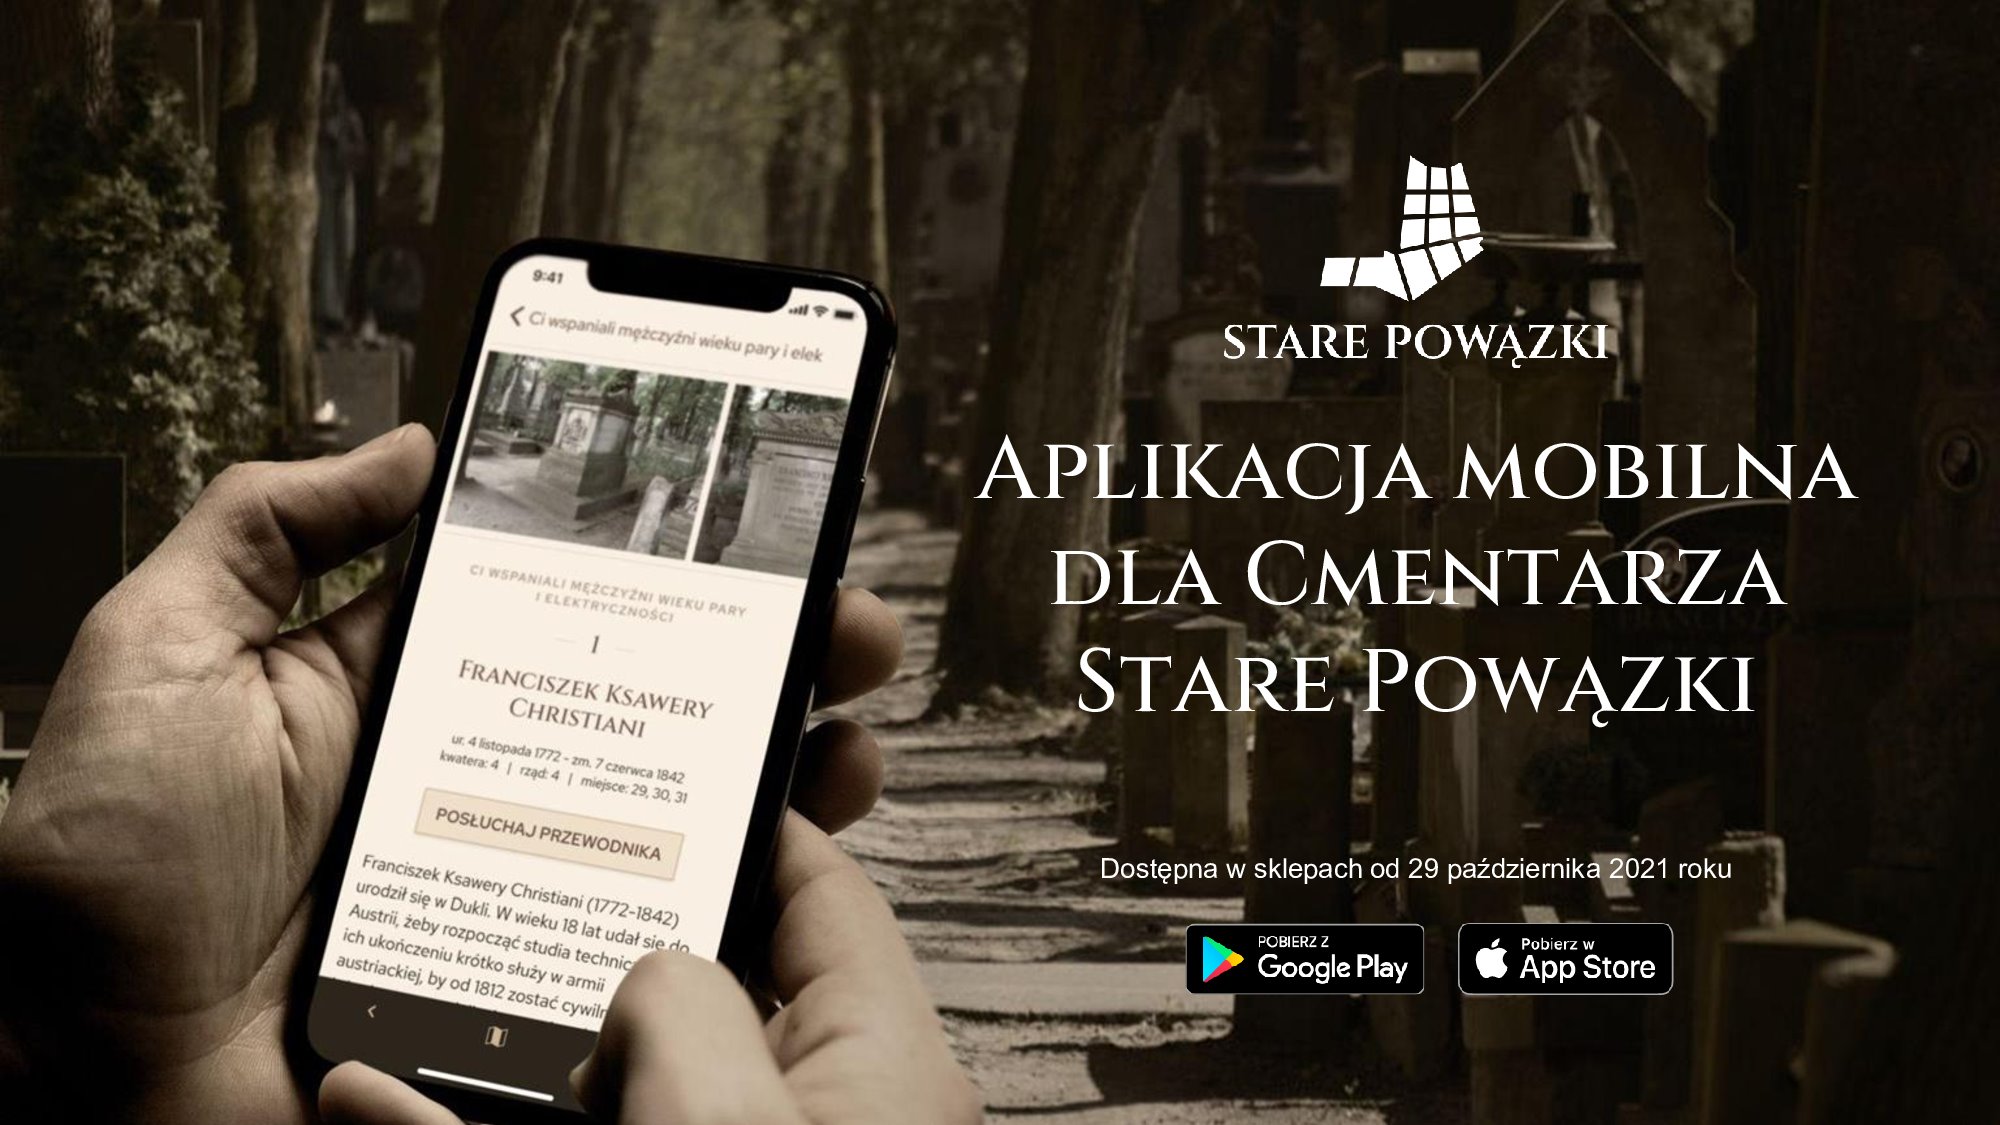 Kapitalne! Miasto uruchomia aplikację mobilną dla cmentarza Stare Powązki